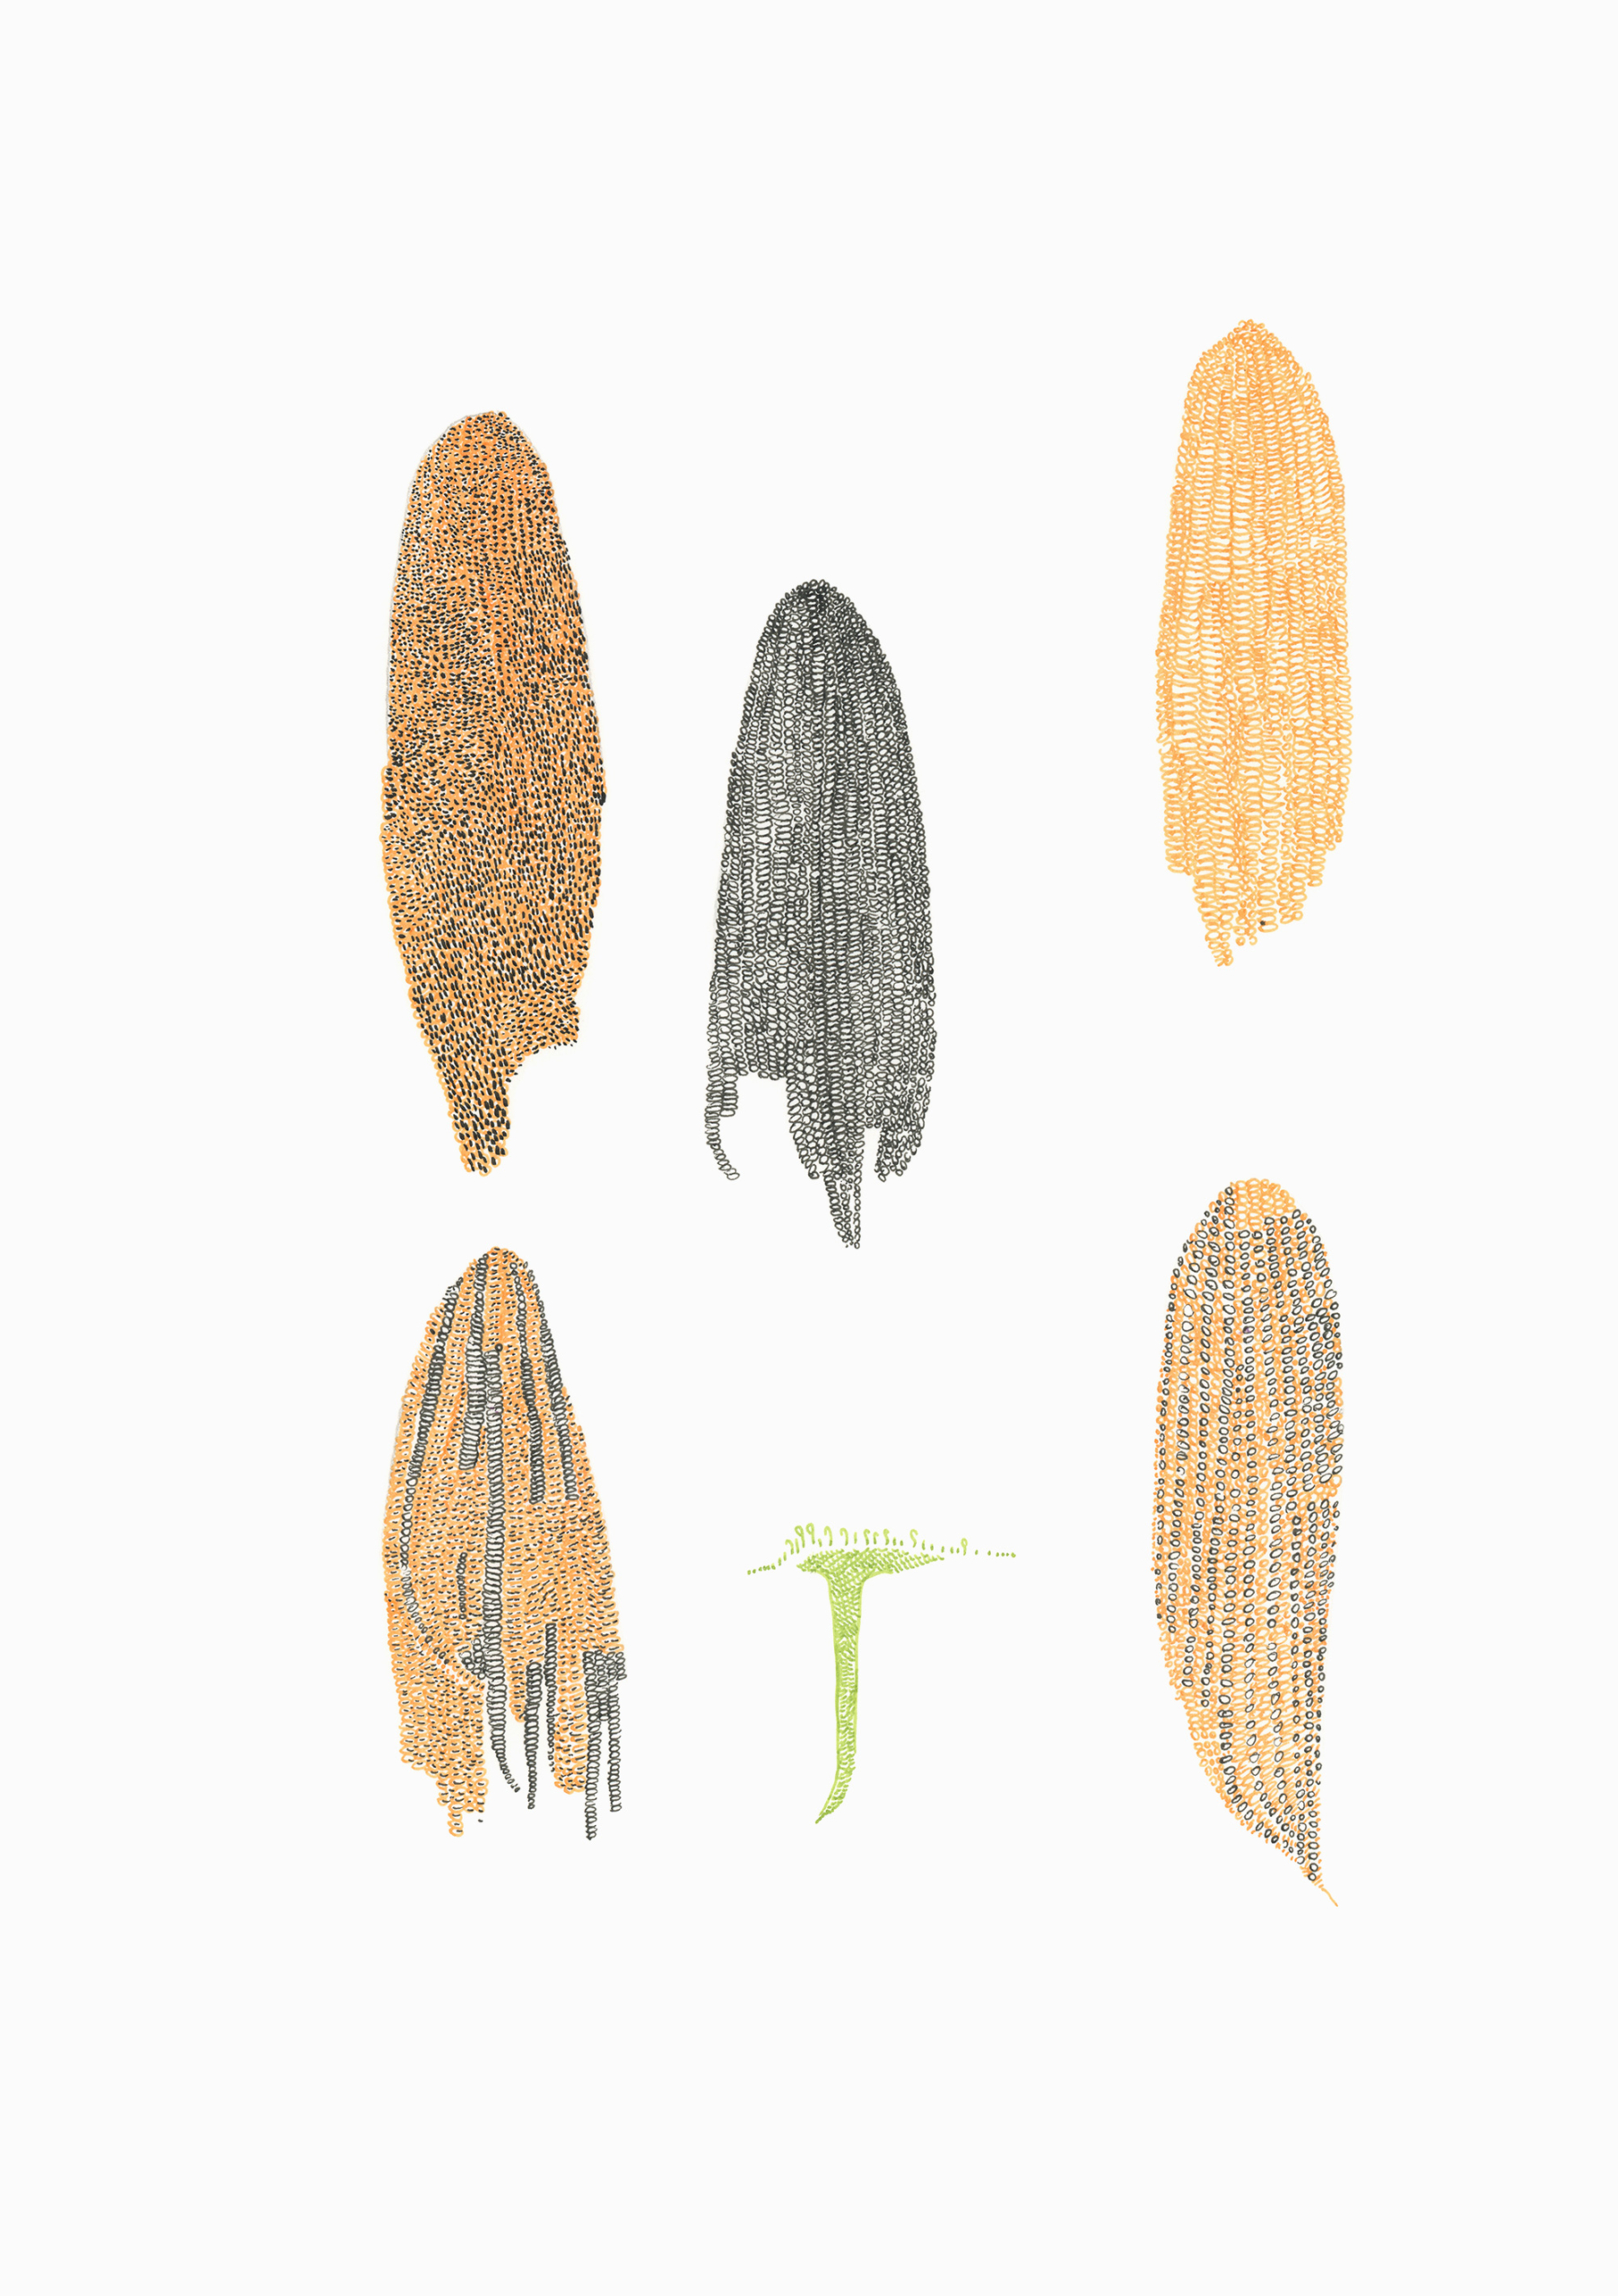 Abbildung einer Zeichnung, auf der fünf Varianten von Maiskolben abgebildet sind.